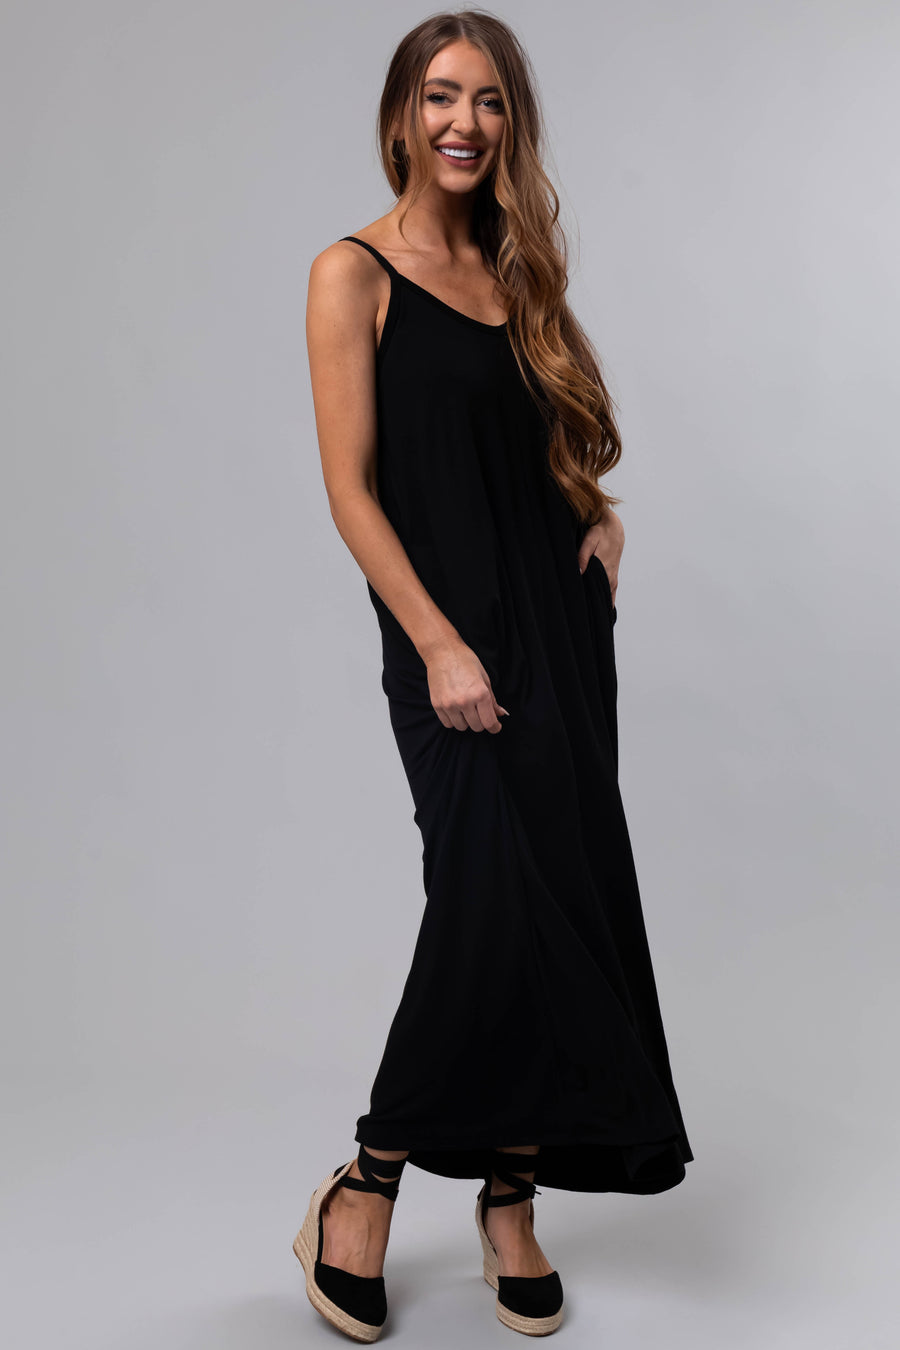 Black Sleeveless Knit Maxi Dress with Pockets